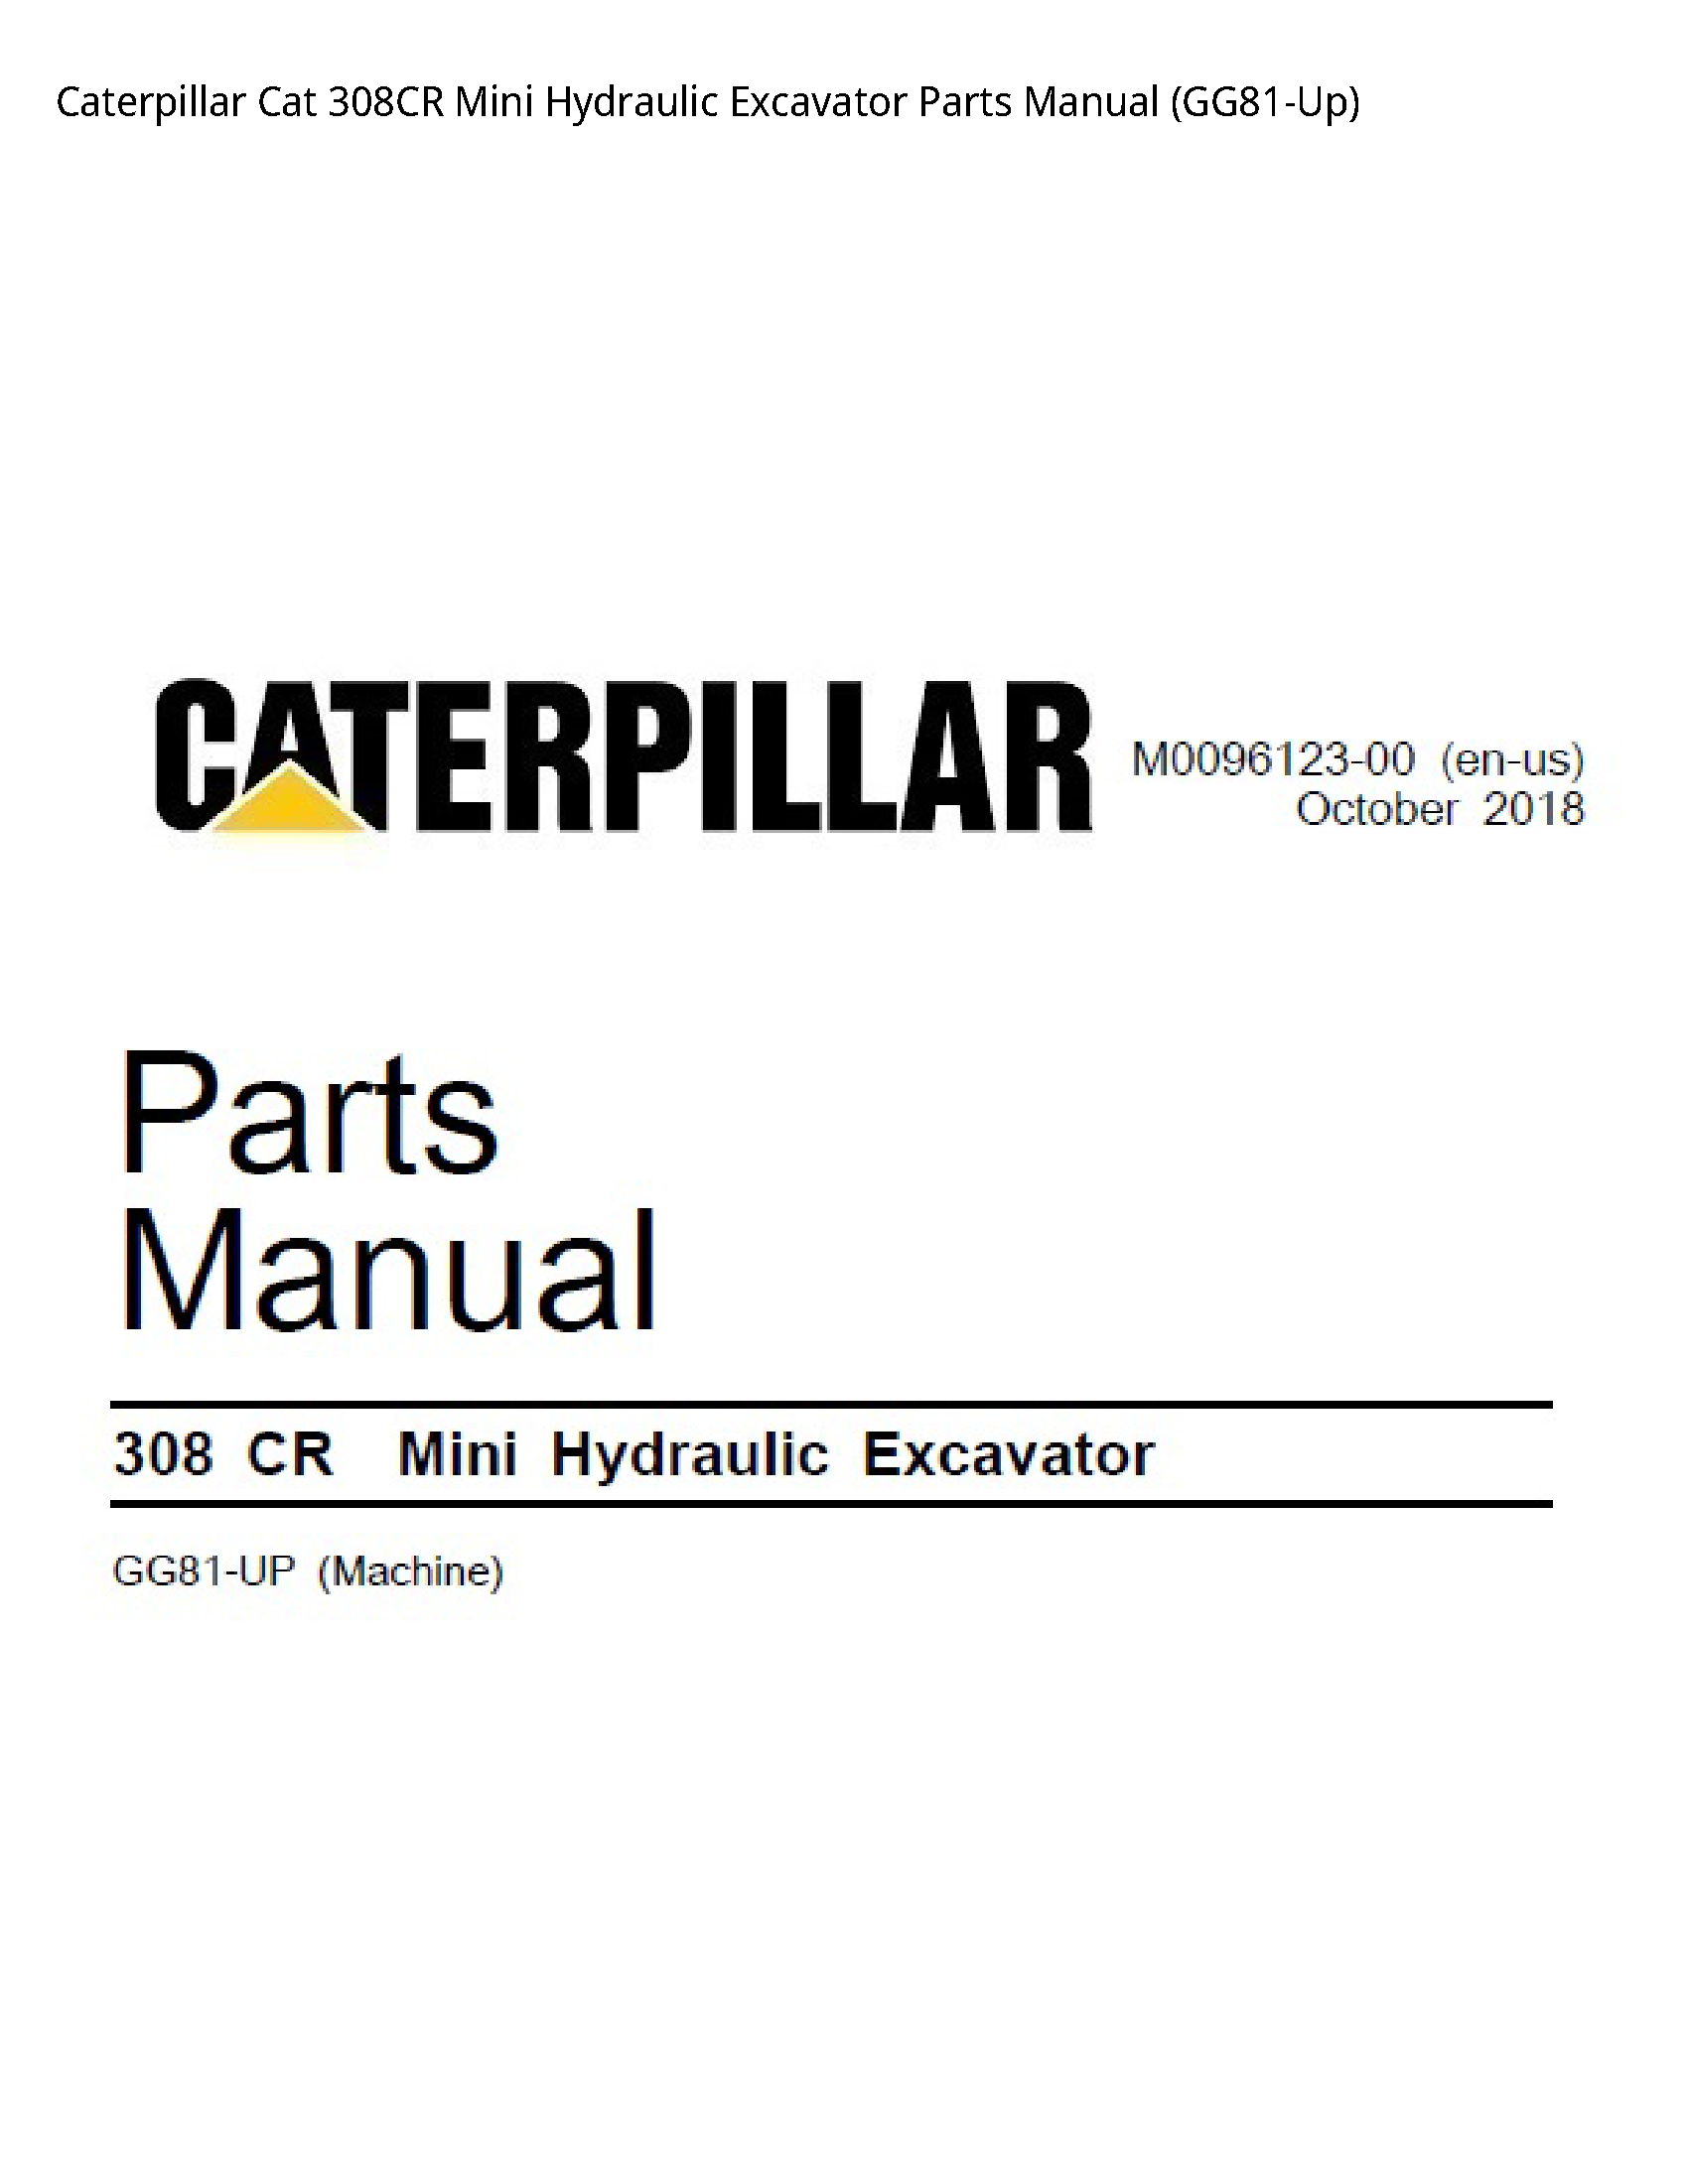 Caterpillar 308CR Cat Mini Hydraulic Excavator Parts manual